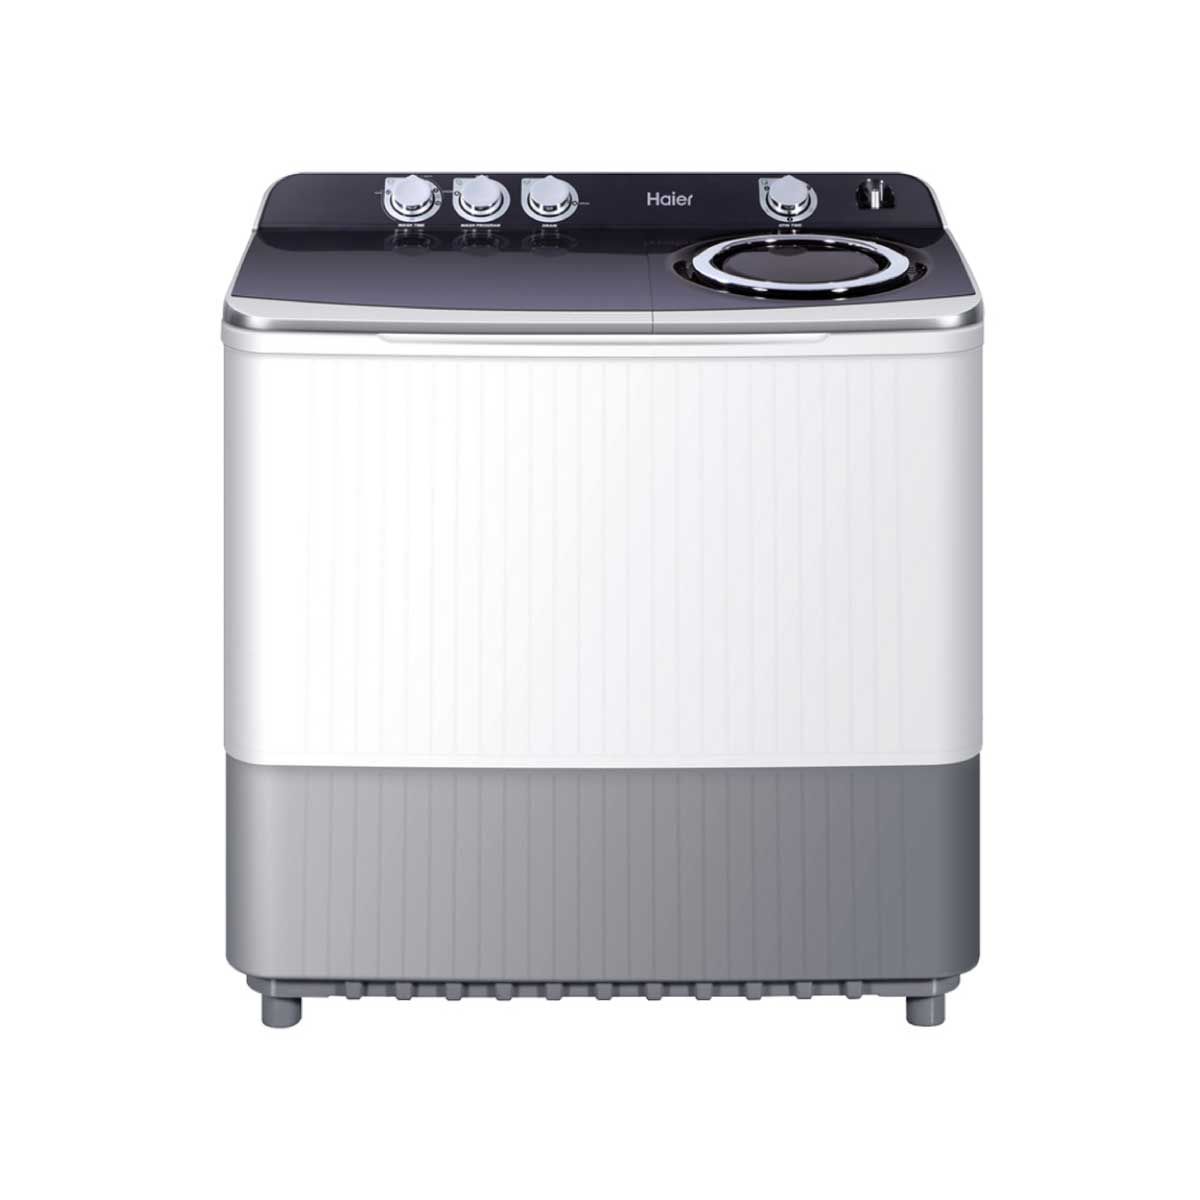 HAIER เครื่องซักผ้าฝาบน 2 ถัง 18 กก. สีขาว รุ่น HWM-T180N2